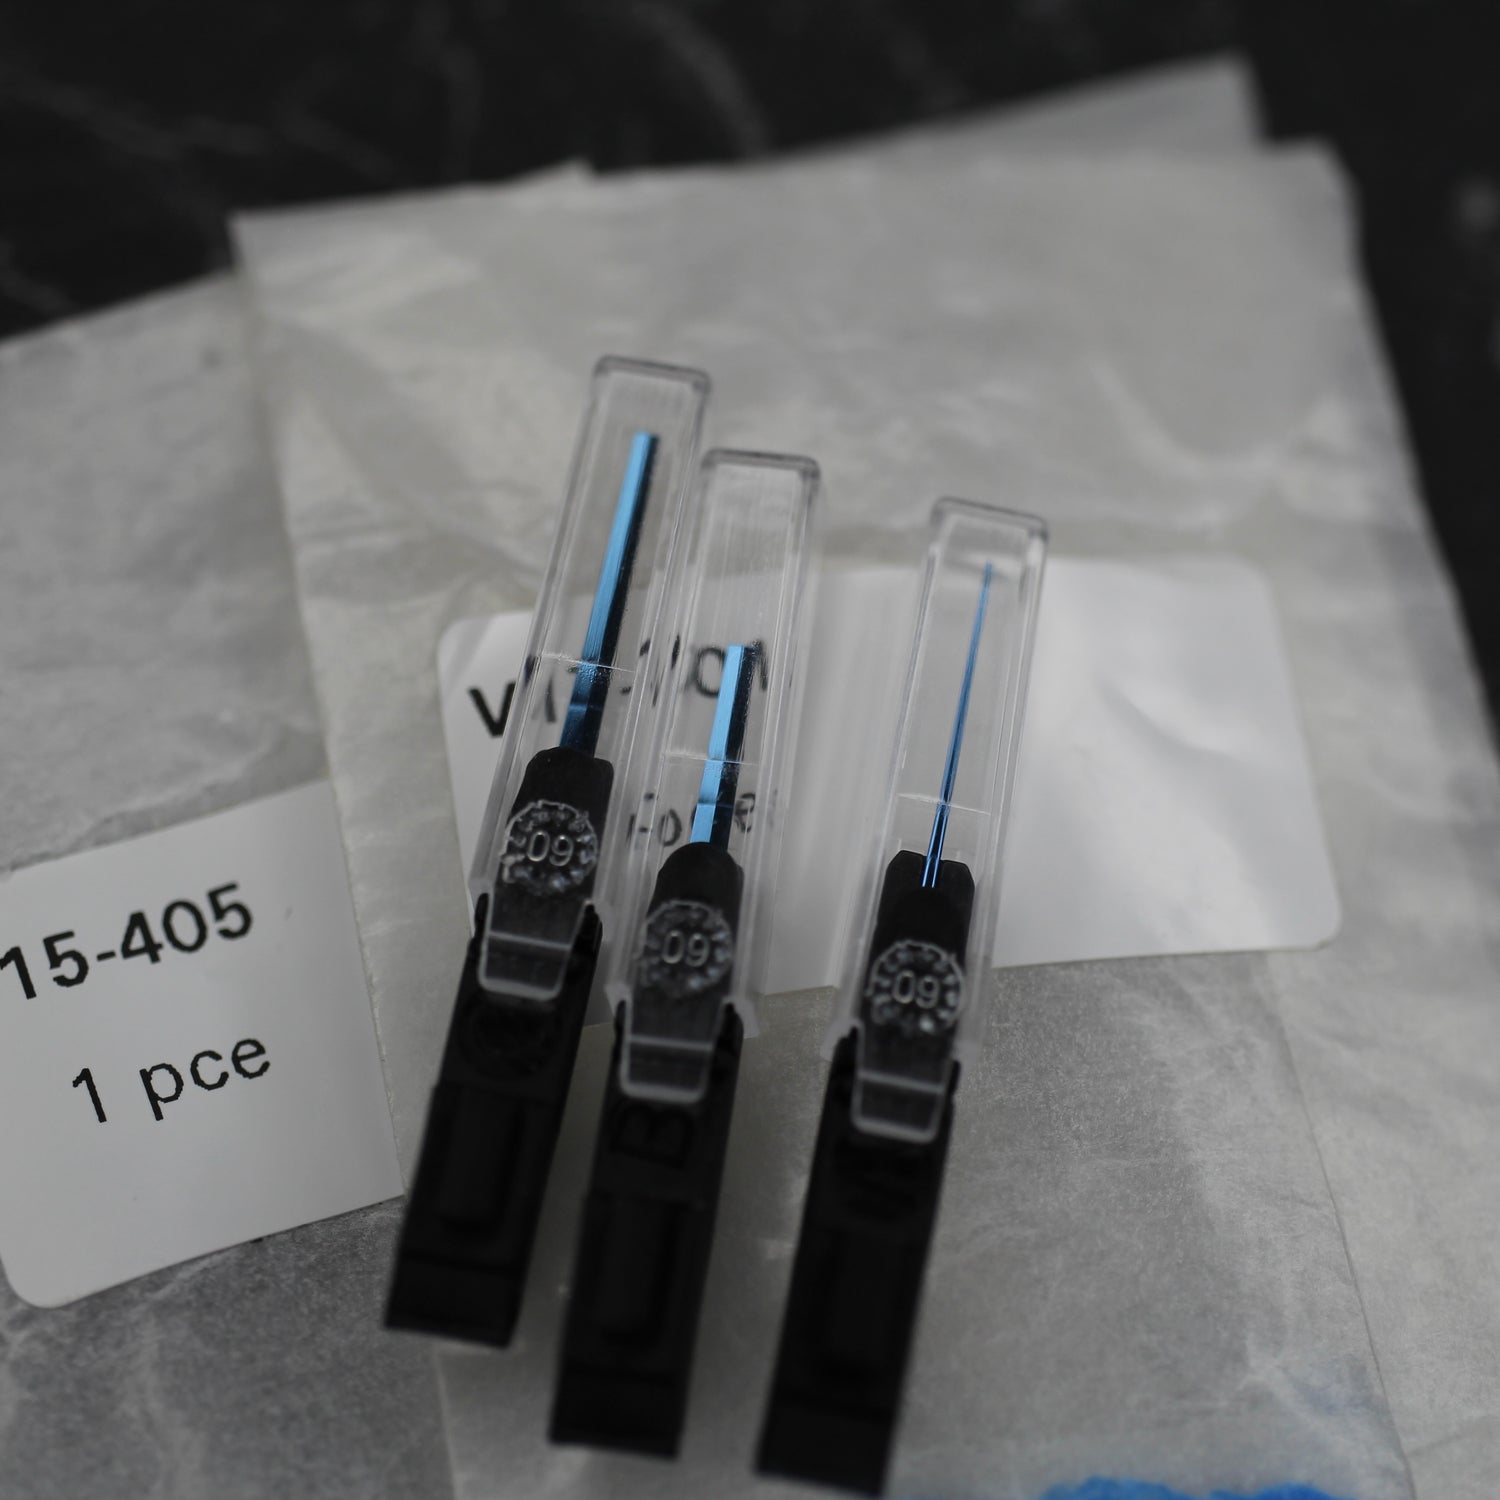 Lancette cod. 410-218239-2 blu nuove in confezione originale
Modello Day-Date 41mm quadranti Ice
Calibro 3156
Ref 218206